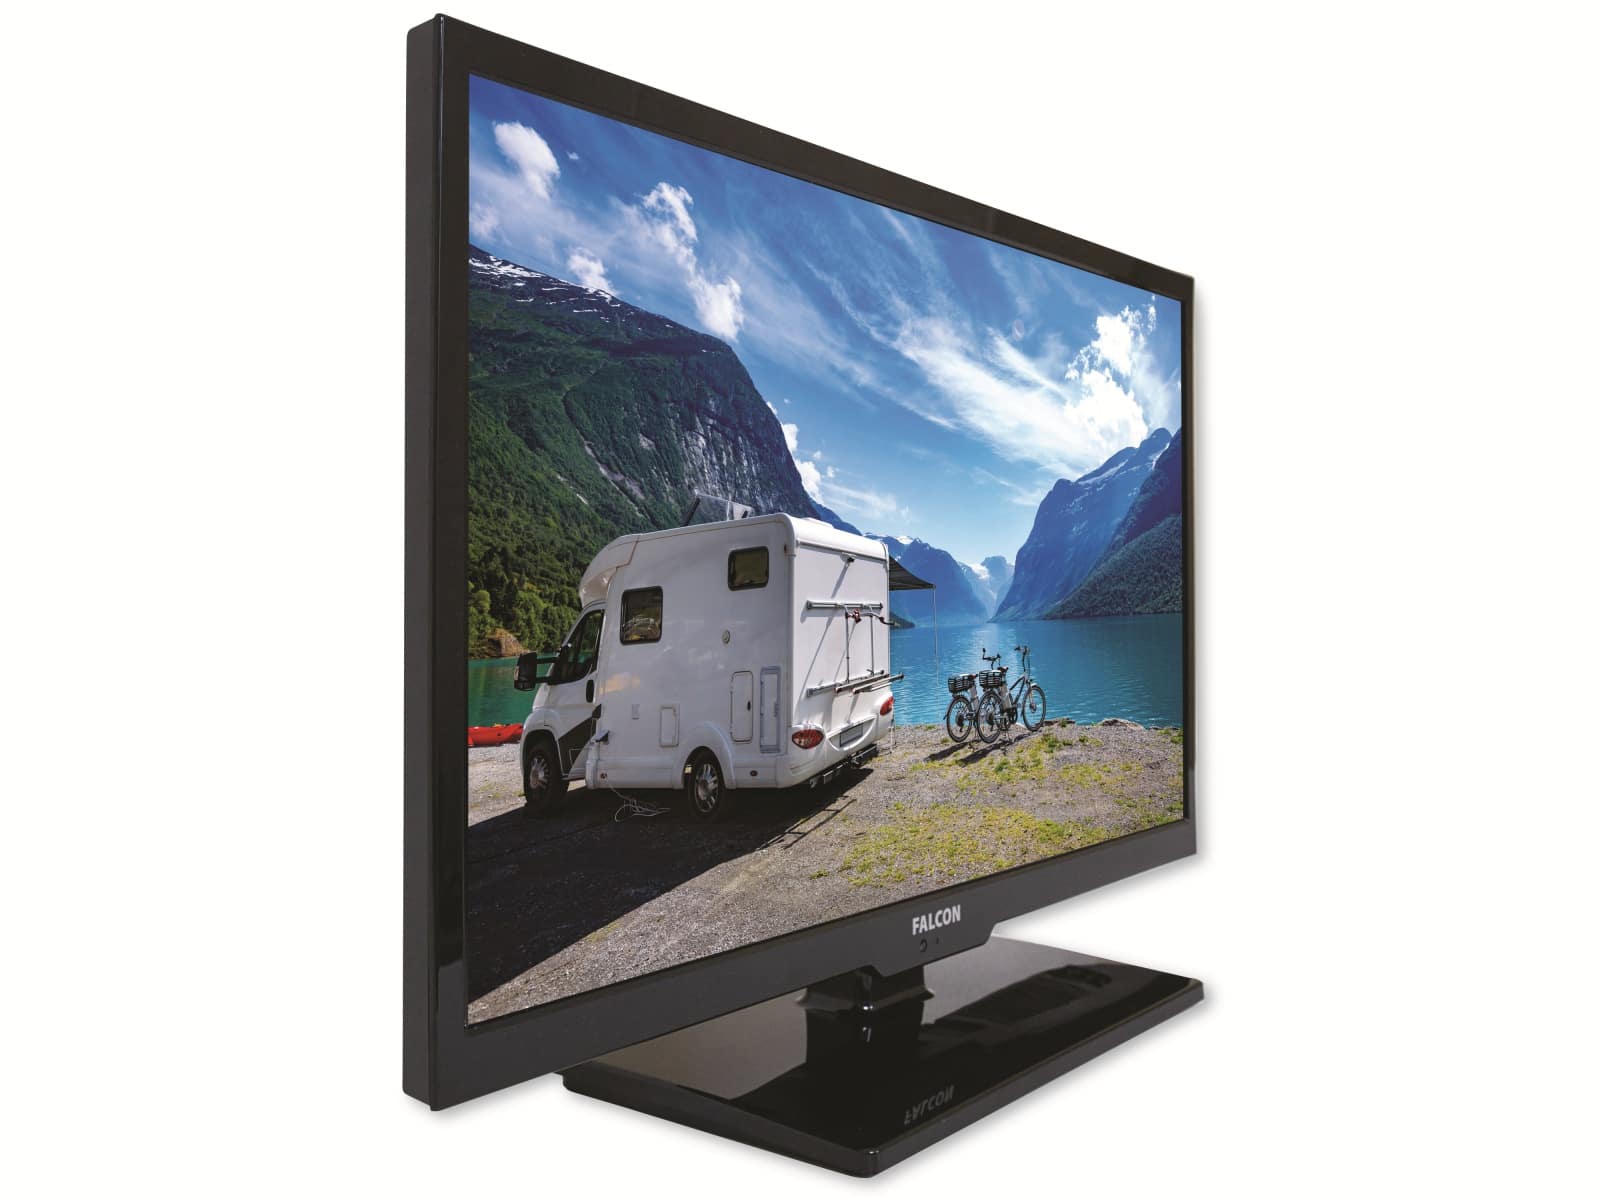 FALCON Easyfind TV Camping Set, inkl. LED-TV 48 cm (19")